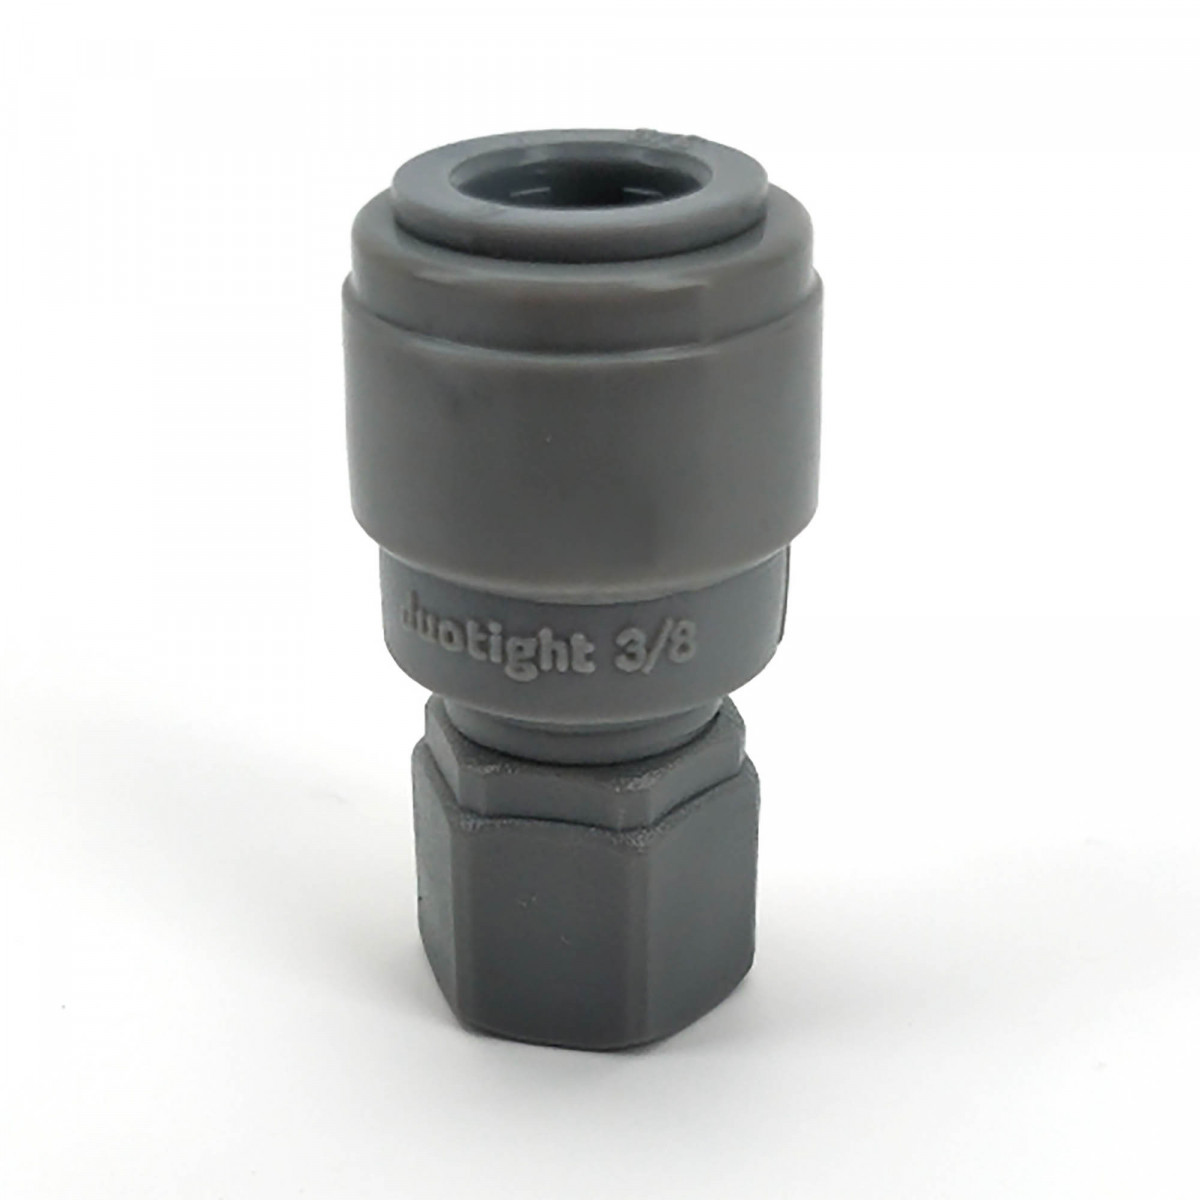 Duotight 9,5 mm (3/8) push-in koppeling naar FFL koppeling